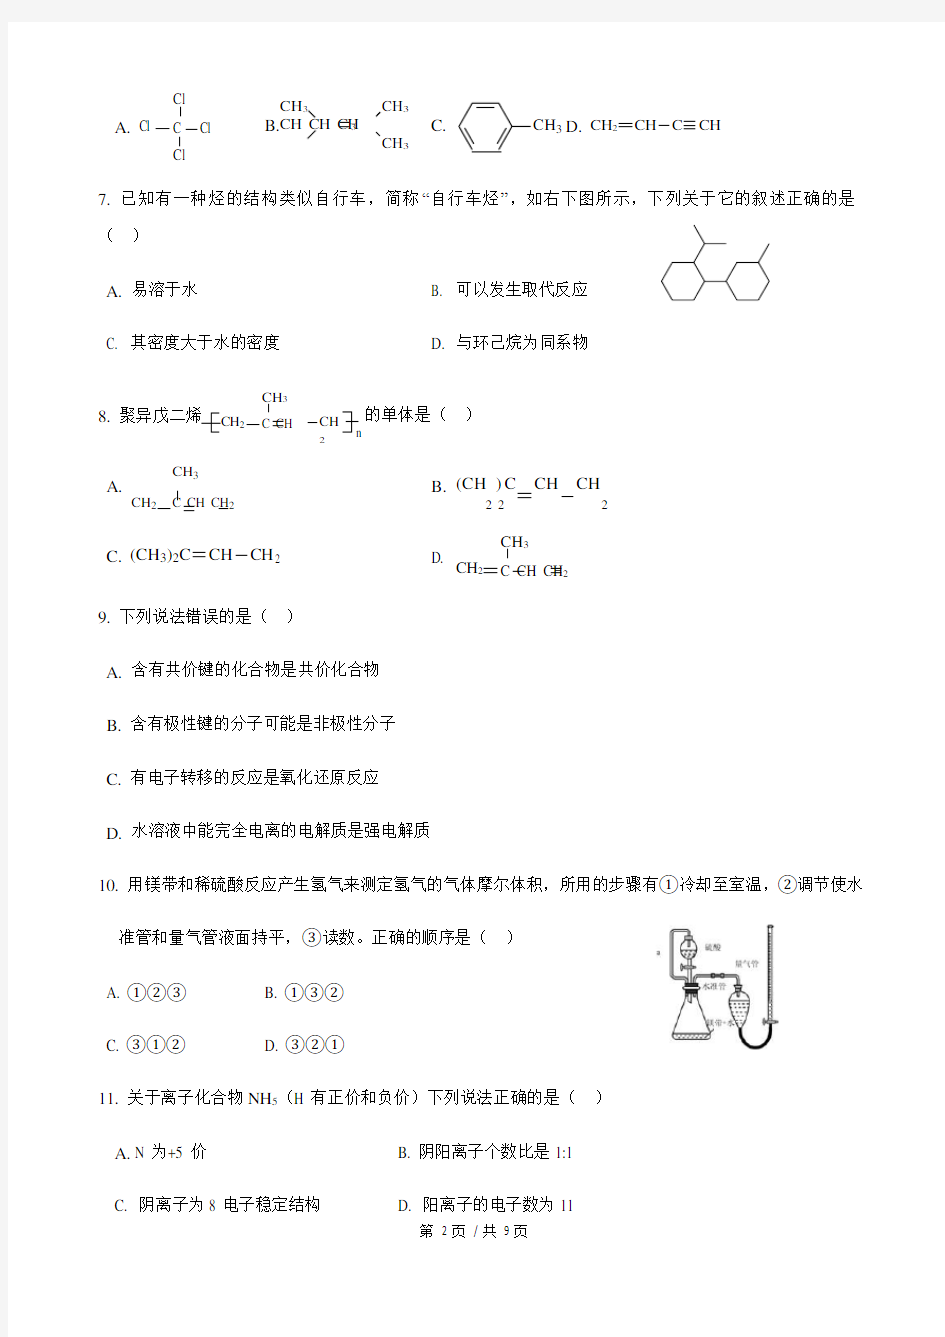 2019年上海市普通高中学业水平等级性考试(高考)化学试卷((最新整理)